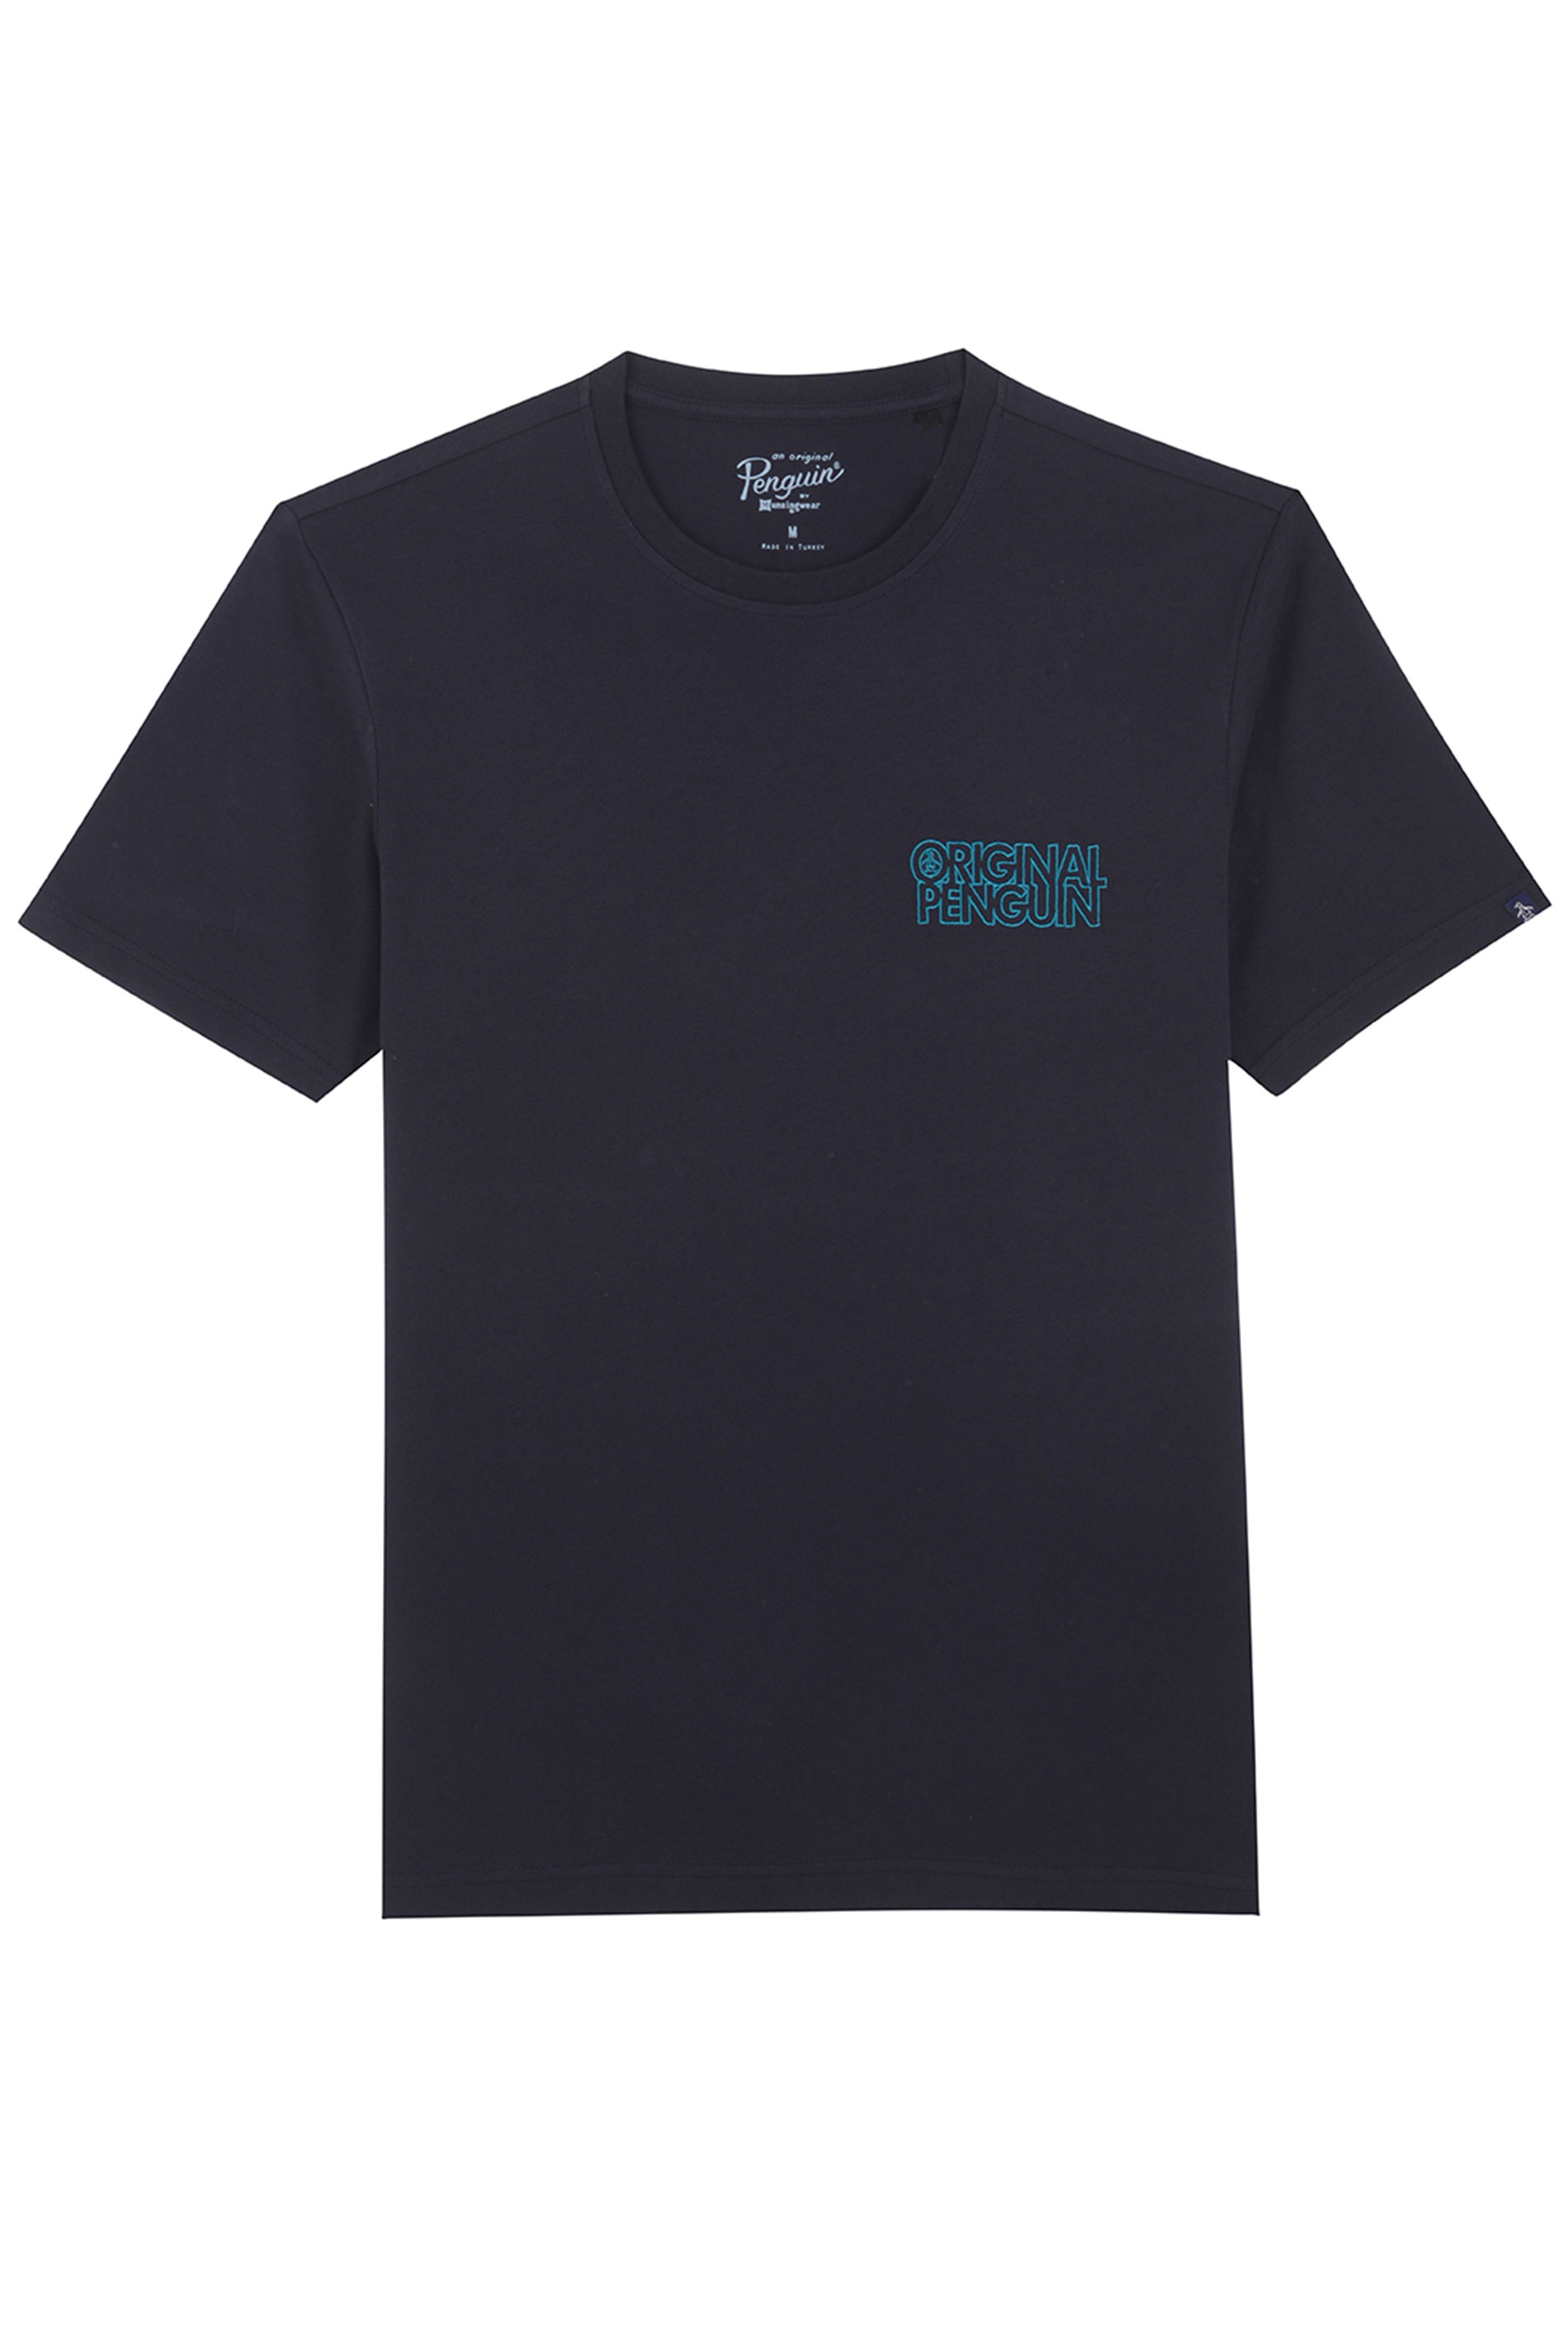 PENGUIN MUNSINGWEAR Navy Blue Printed Logo T-Shirt | BadRhino